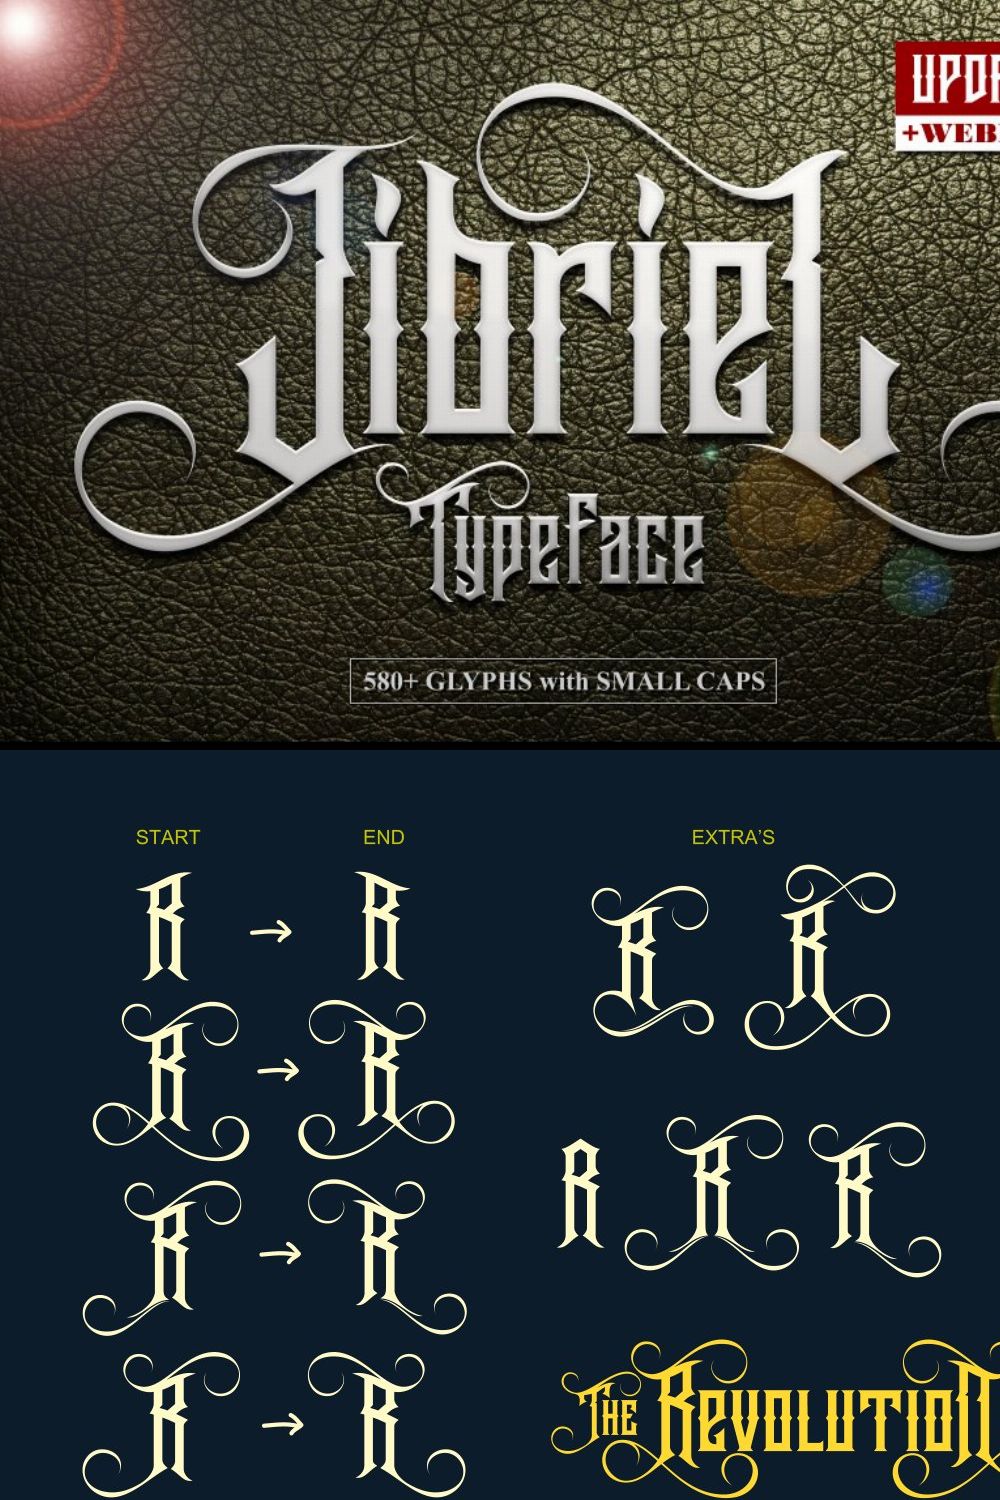 Jibriel Typeface pinterest preview image.